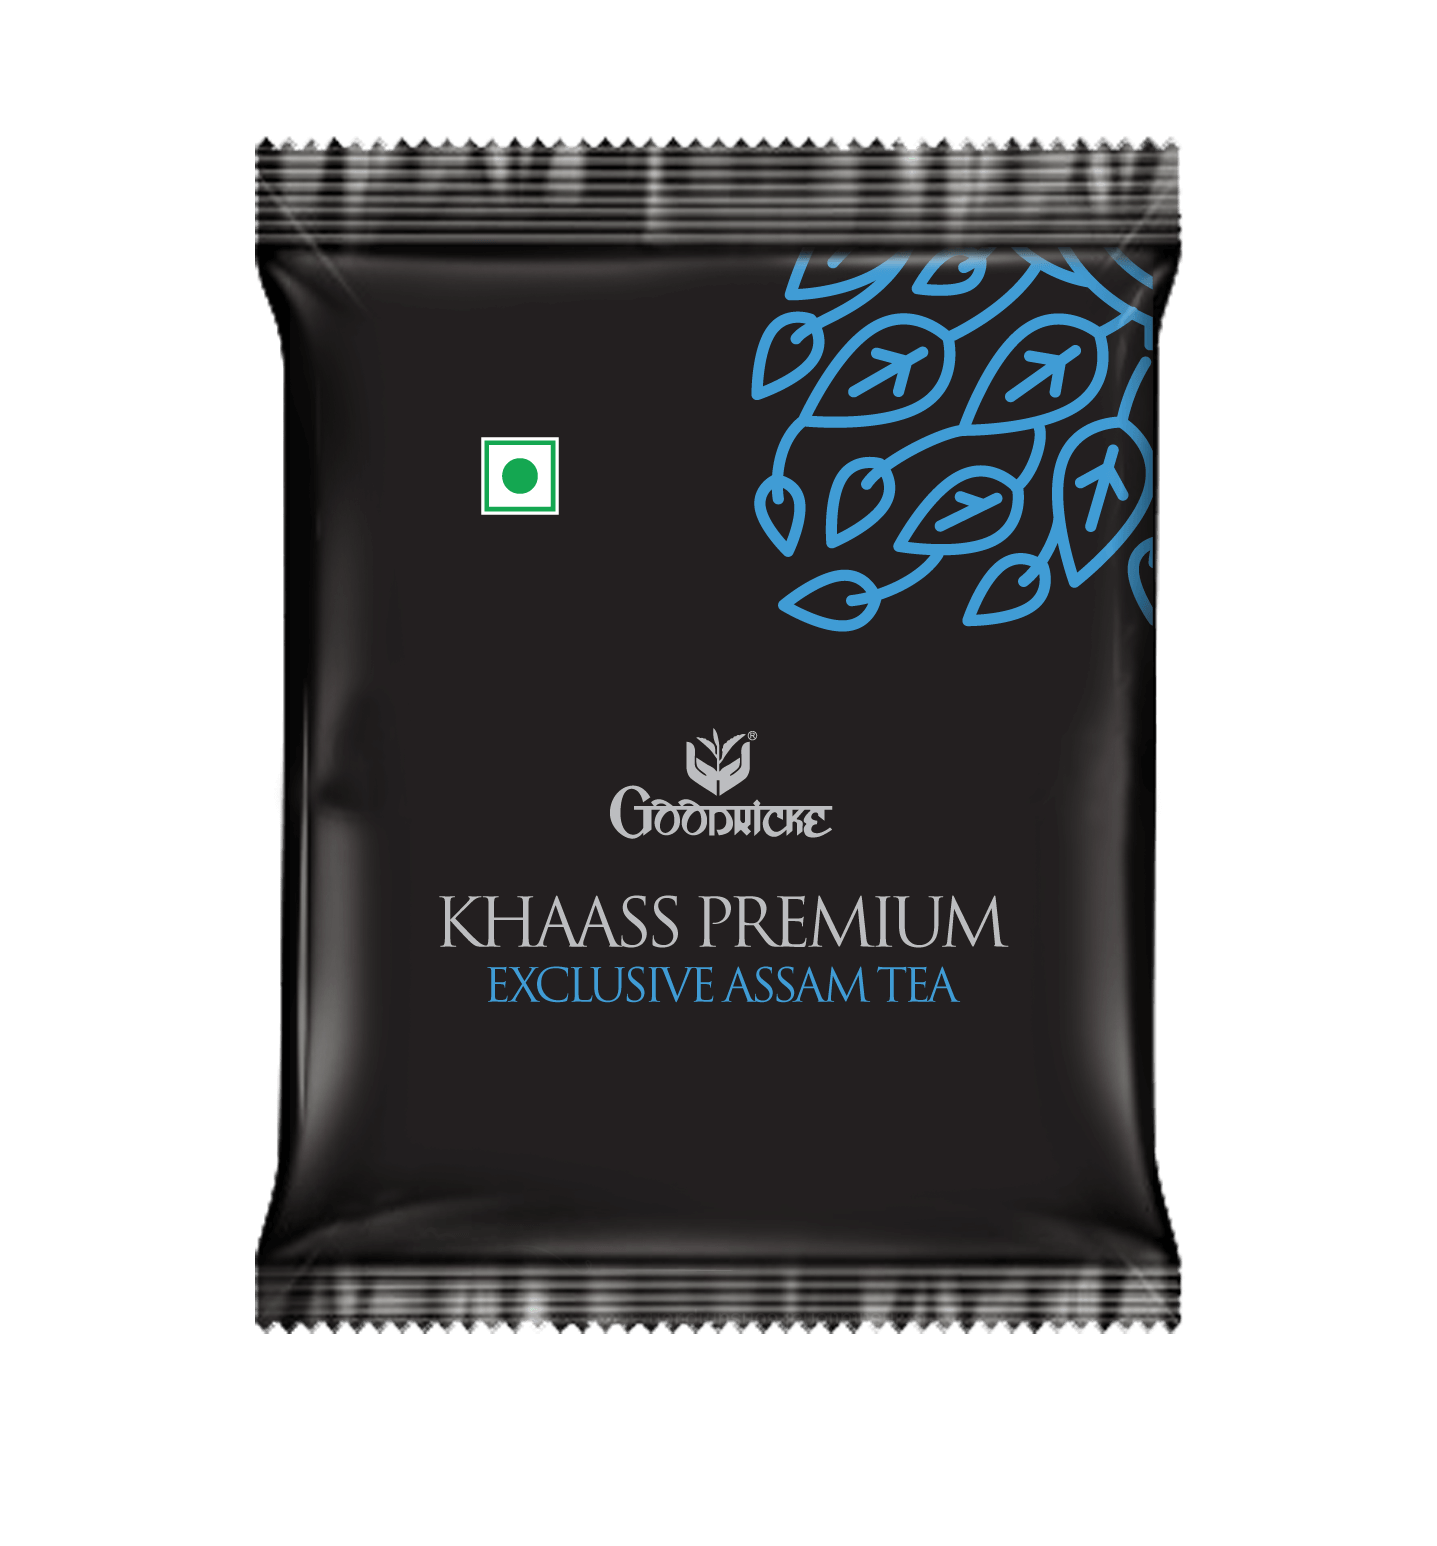 Khaass Premium Exclusive Assam Tea, 25Tea Bags (Pack of 2)